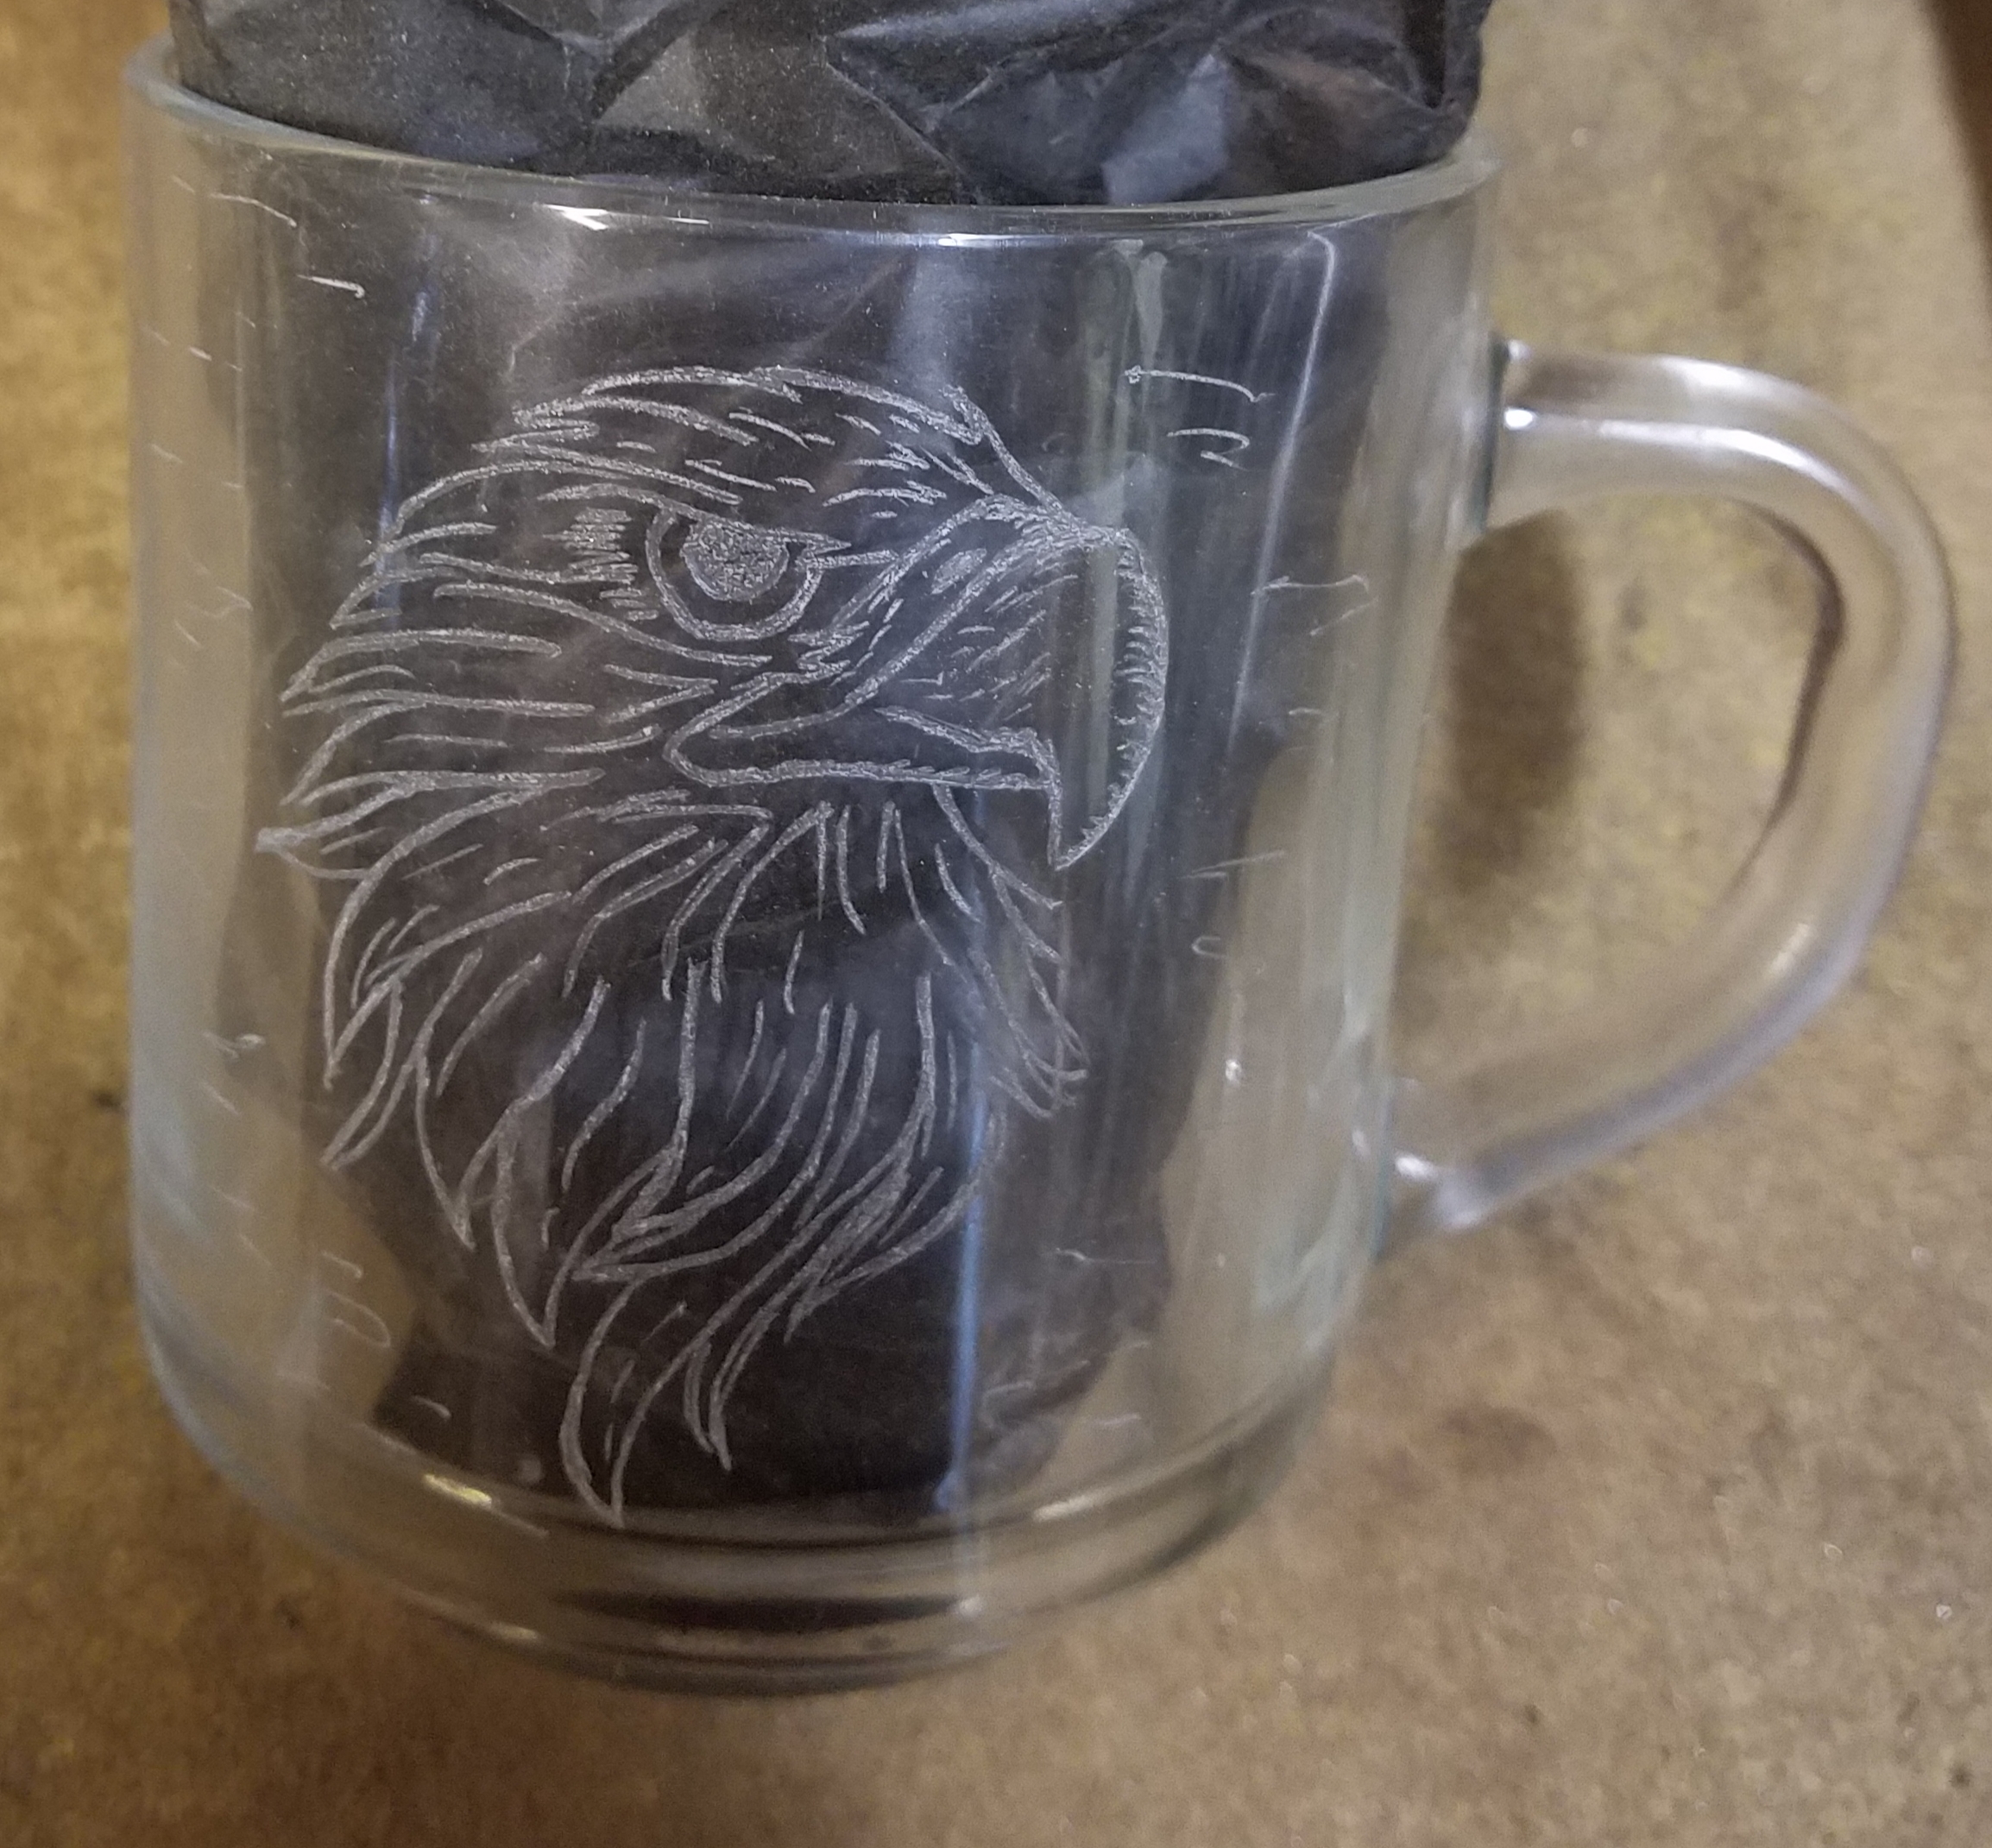 Eagle engraved coffee mug... $30.00 ea